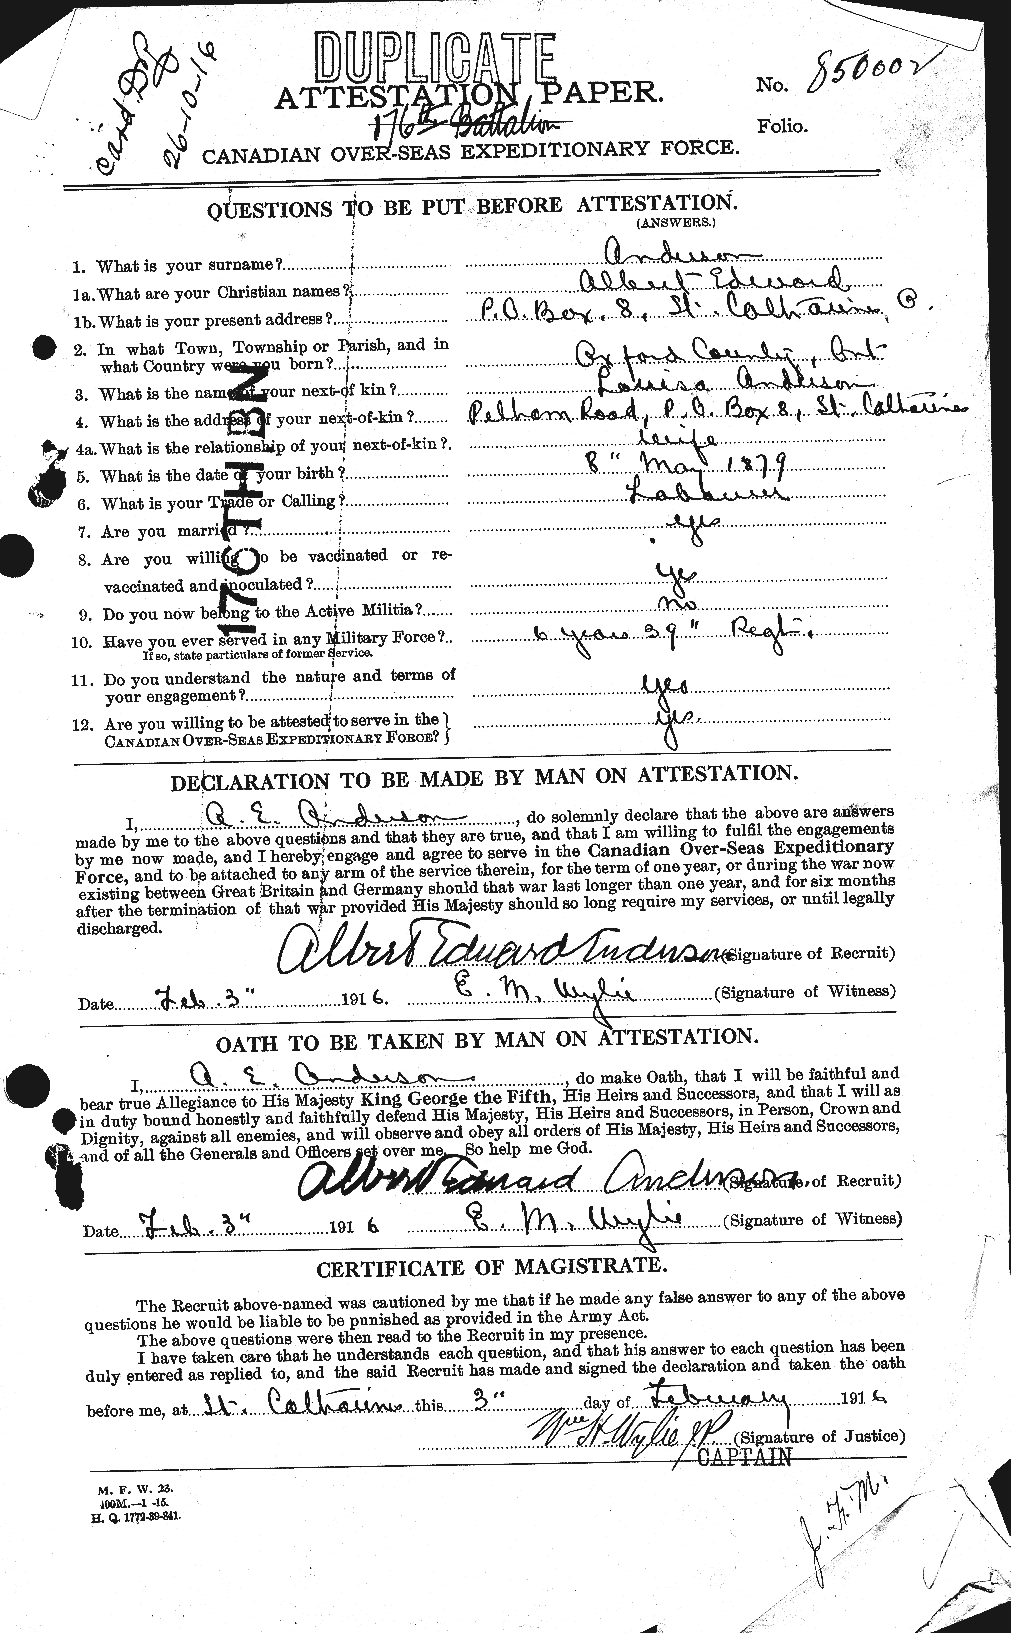 Dossiers du Personnel de la Première Guerre mondiale - CEC 209546a